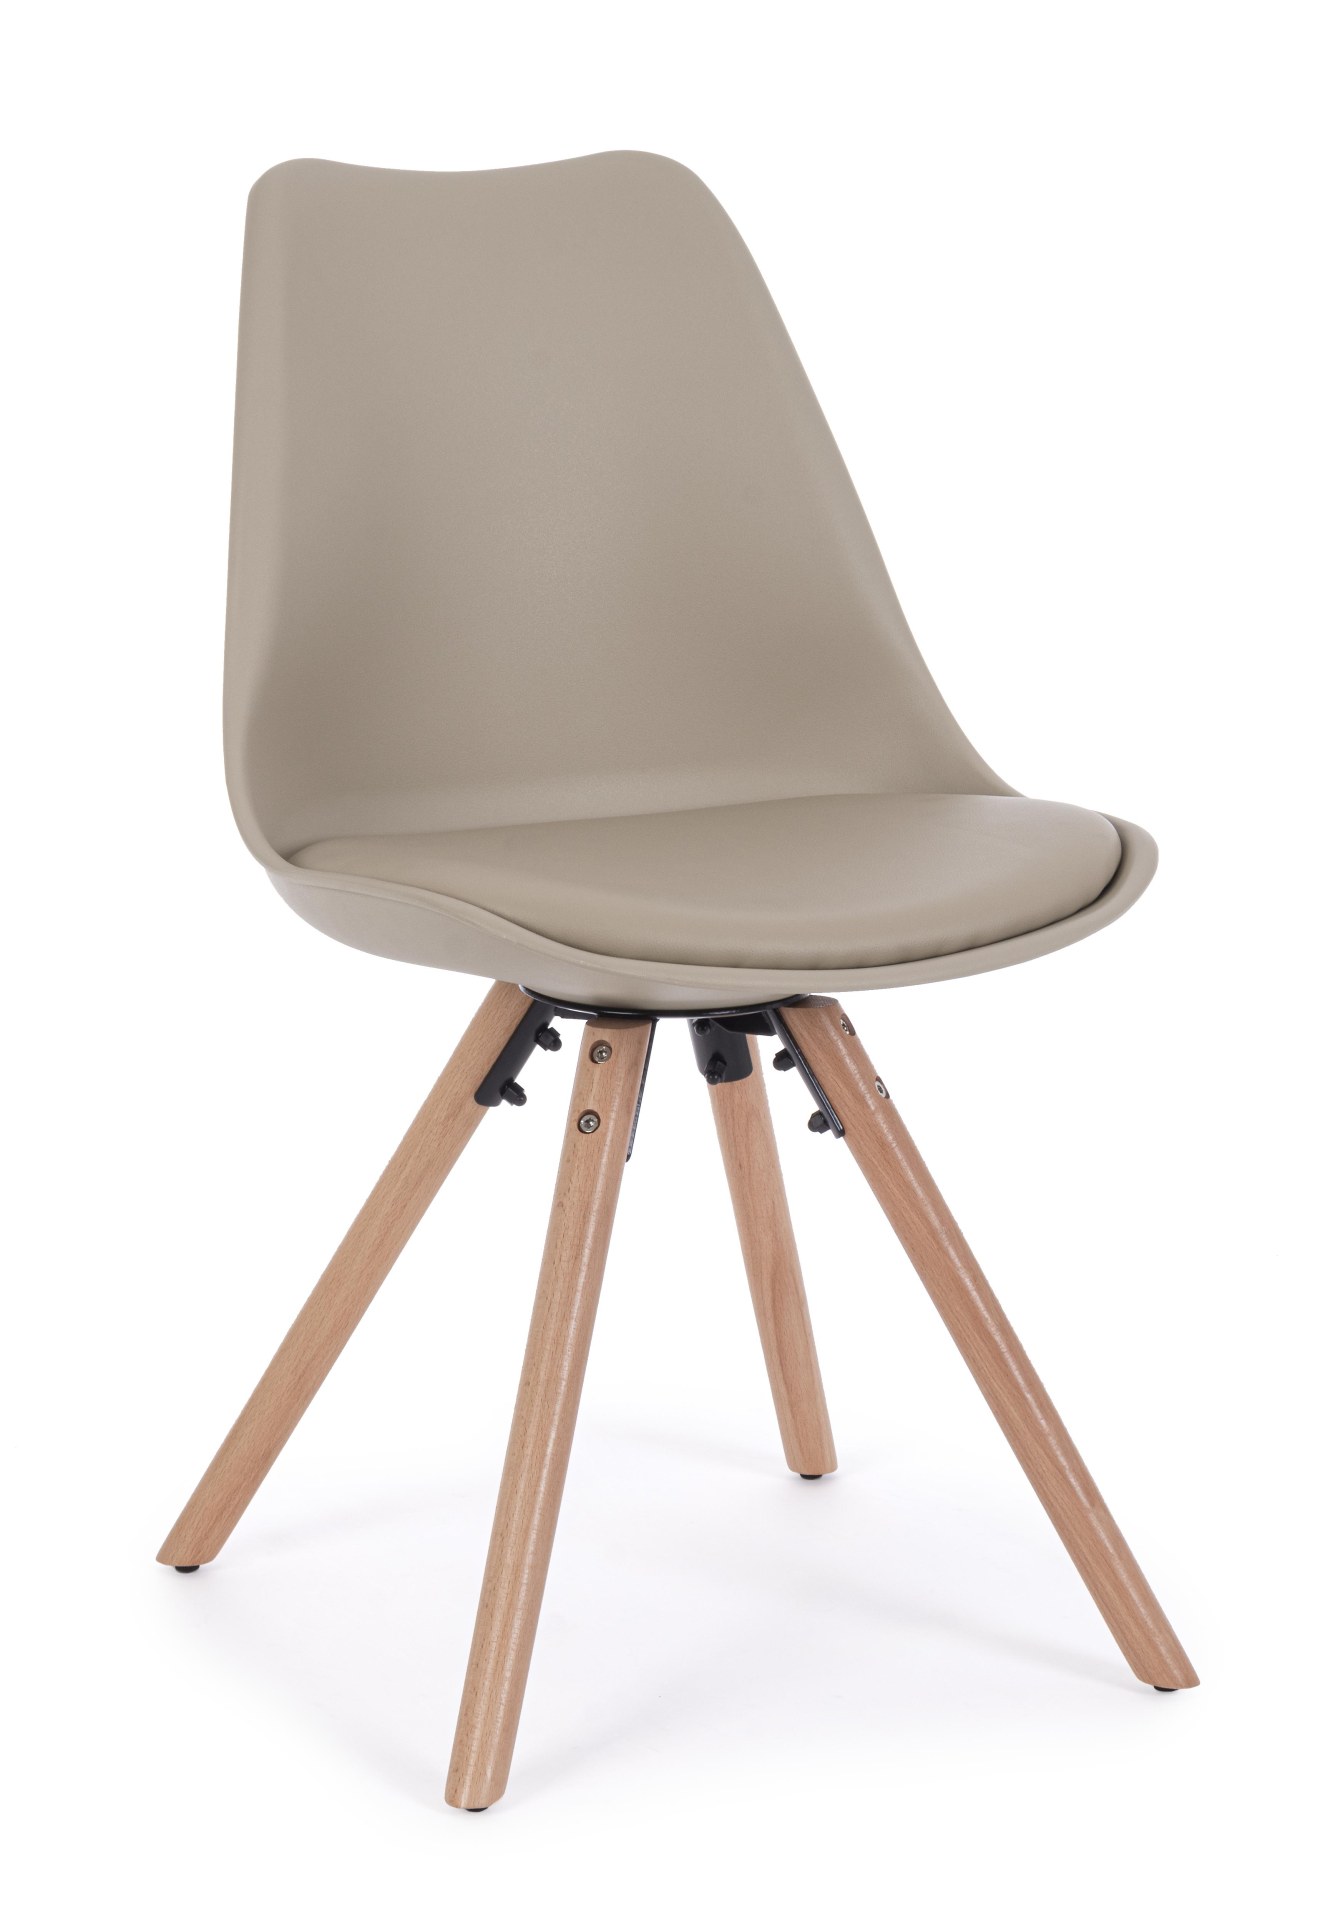 Der Stuhl New Trend überzeugt mit seinem modernem Design. Gefertigt wurde der Stuhl aus Kunststoff, welcher einen Taupe Farbton besitzt. Das Gestell ist aus Buchenholz. Die Sitzhöhe des Stuhls ist 49 cm